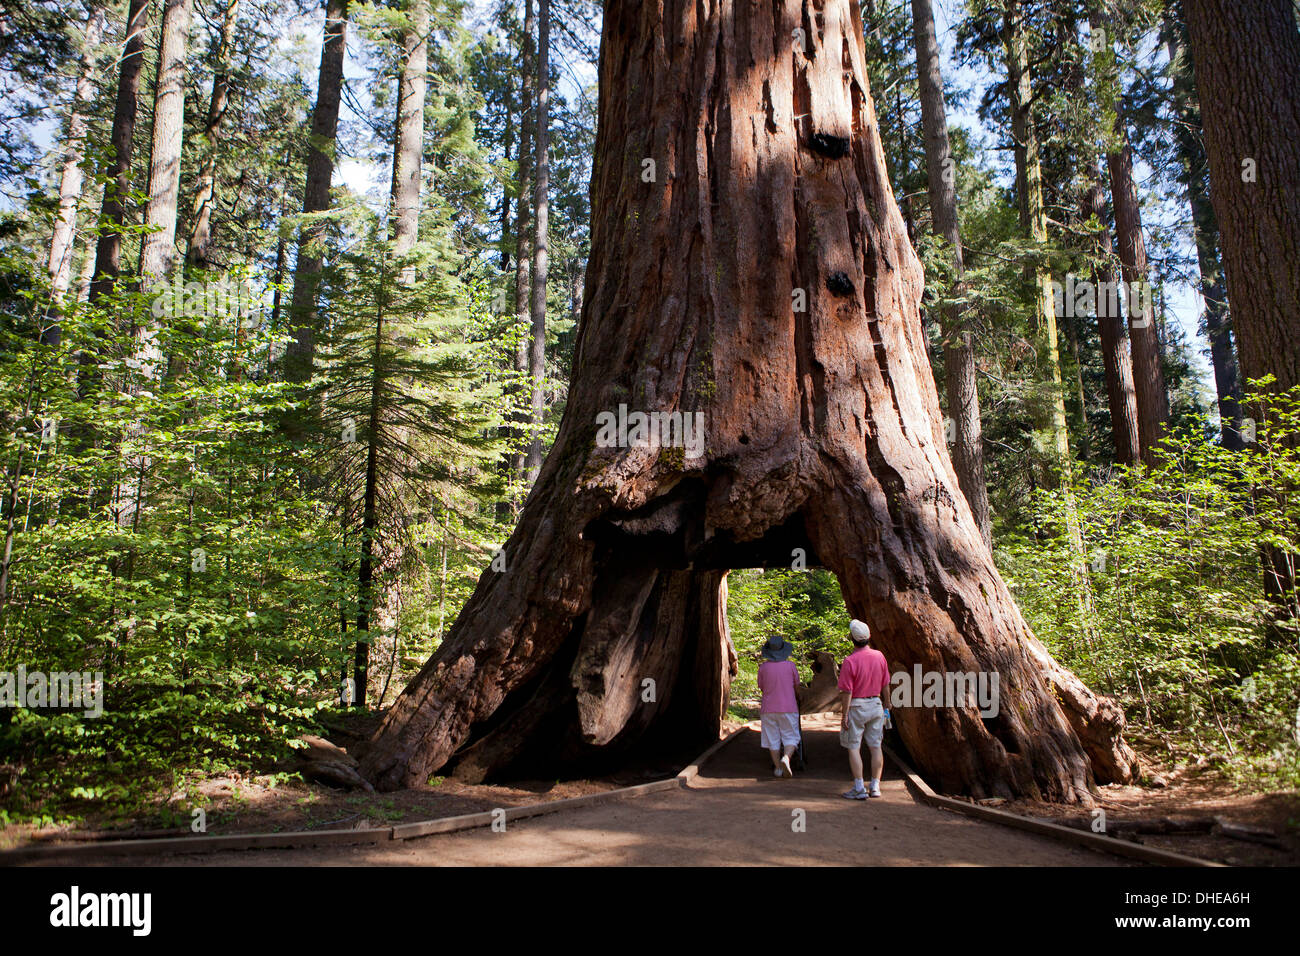 La gente caminando a través de la secoya gigante Pioneer Cabin Tree - Calaveras Big Tree State Park, California, EE.UU. Foto de stock